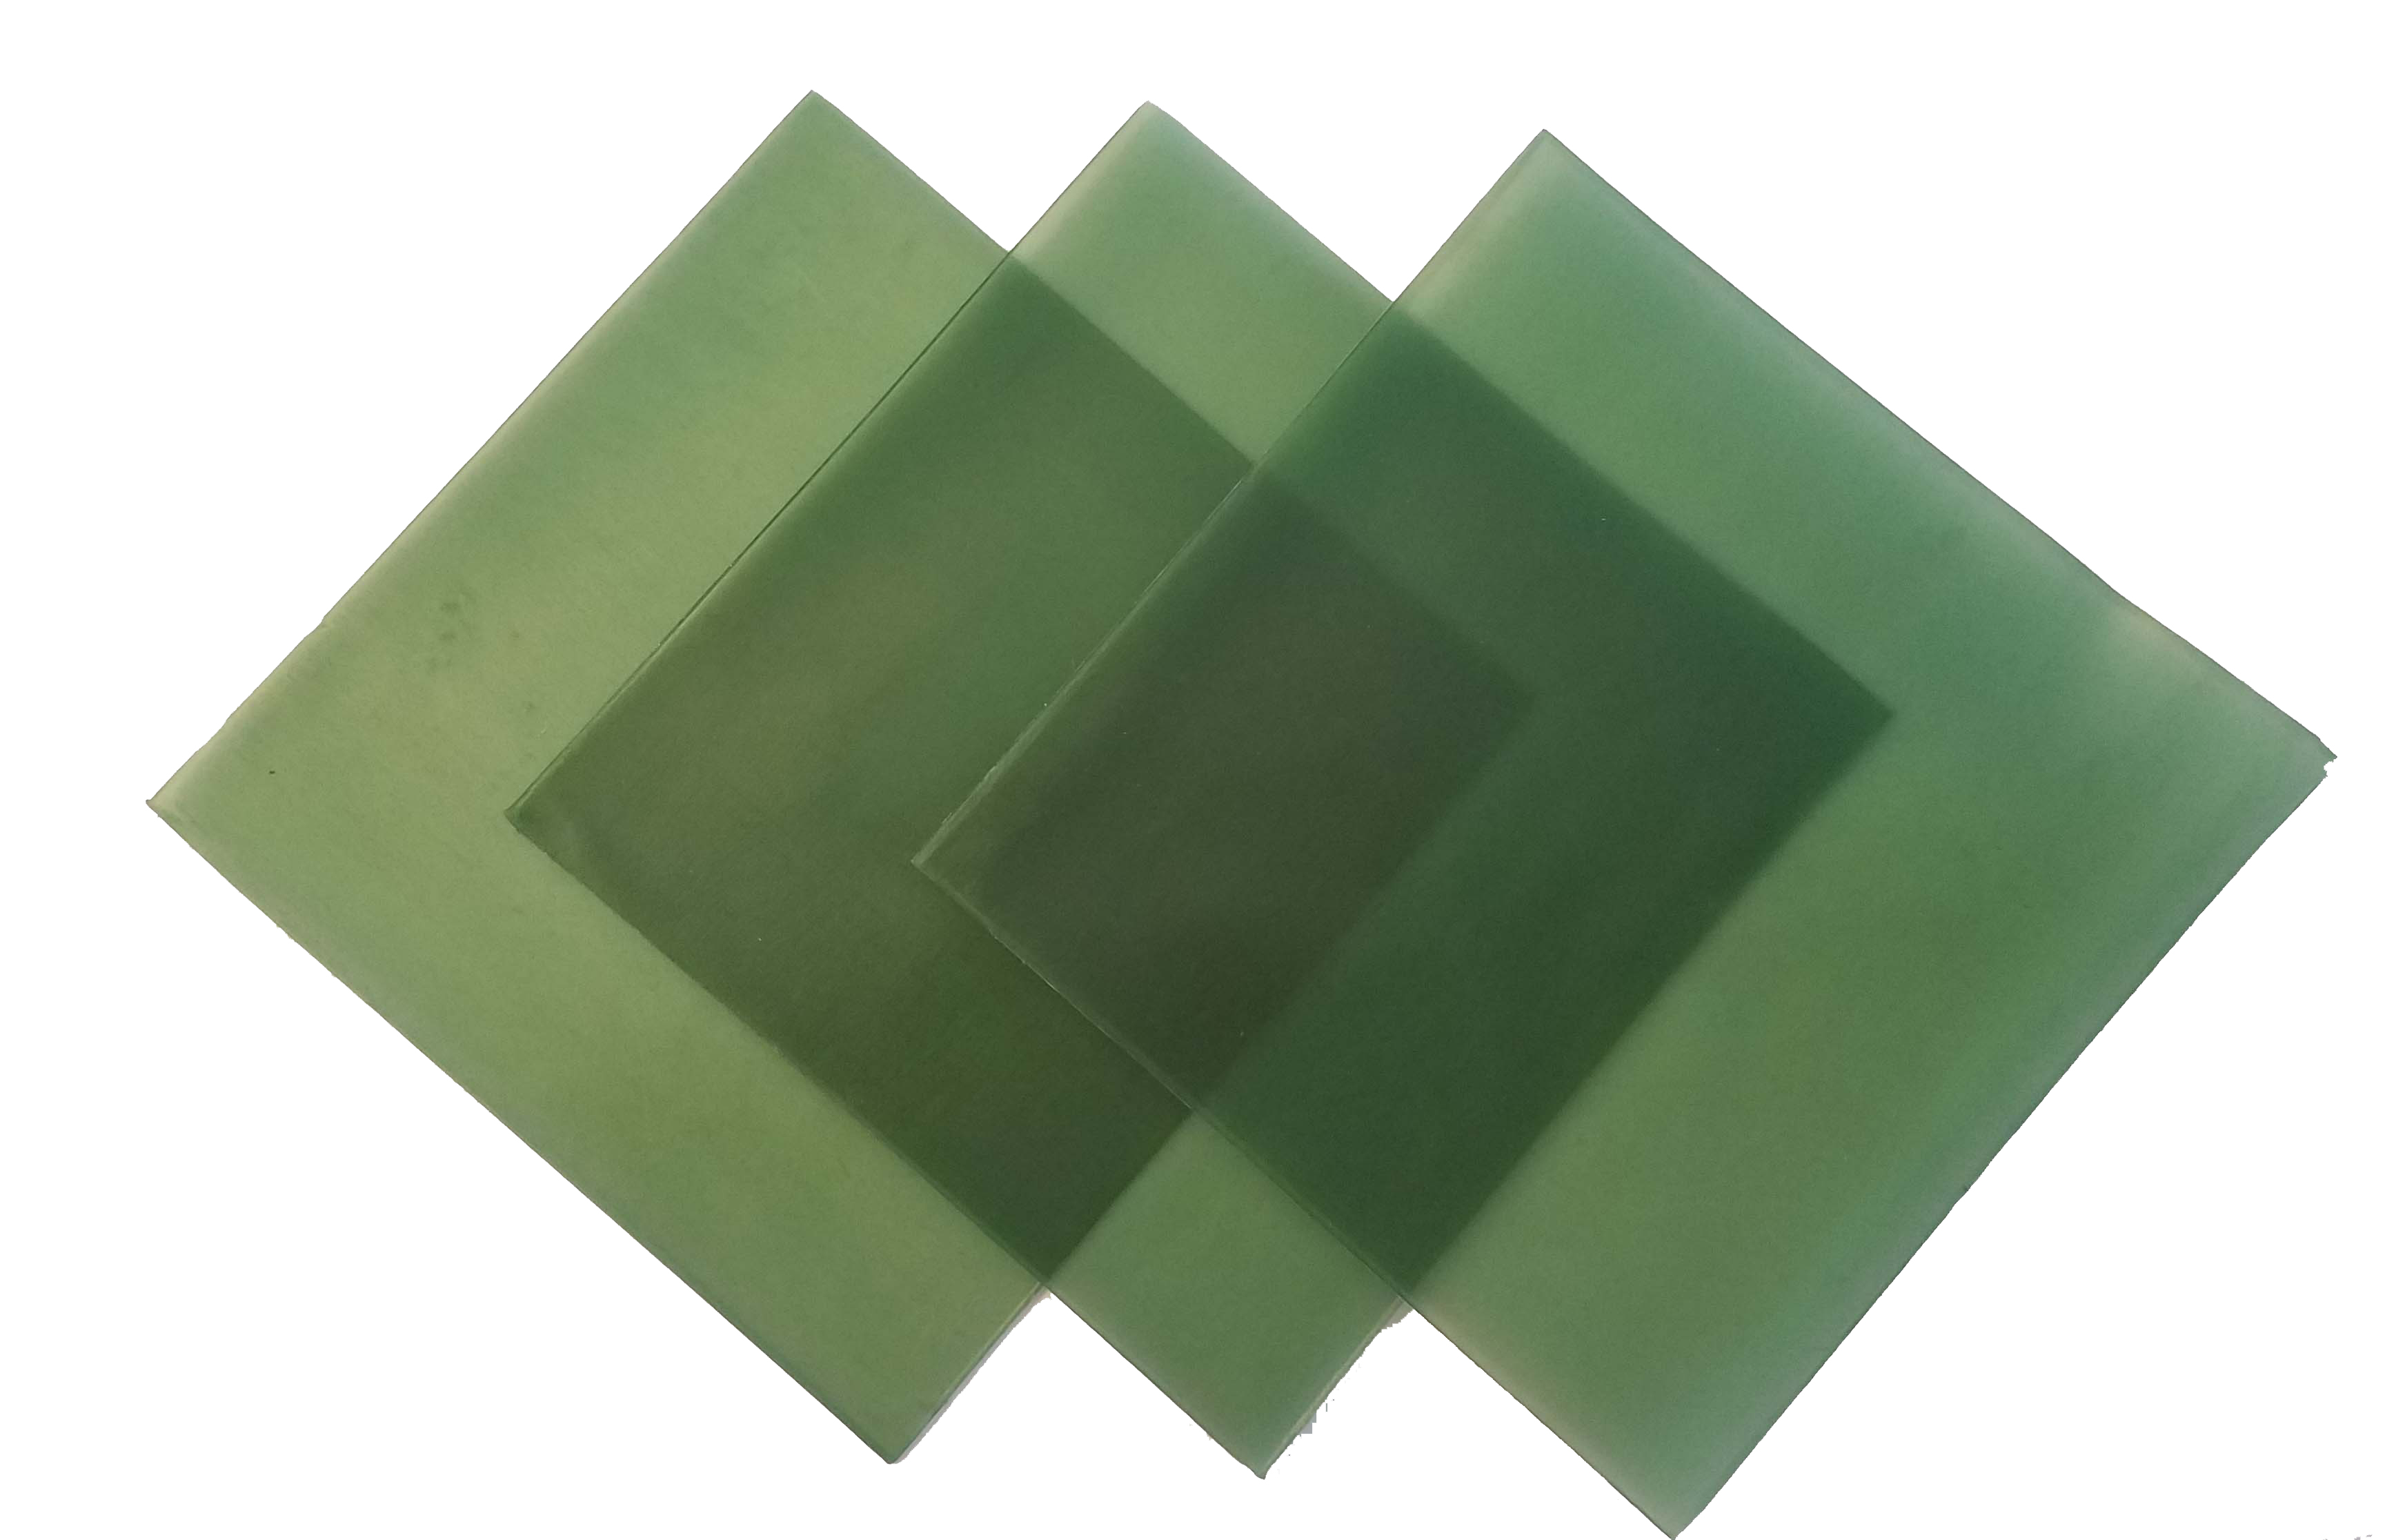 4"x4" sheet wax 24 gauge green